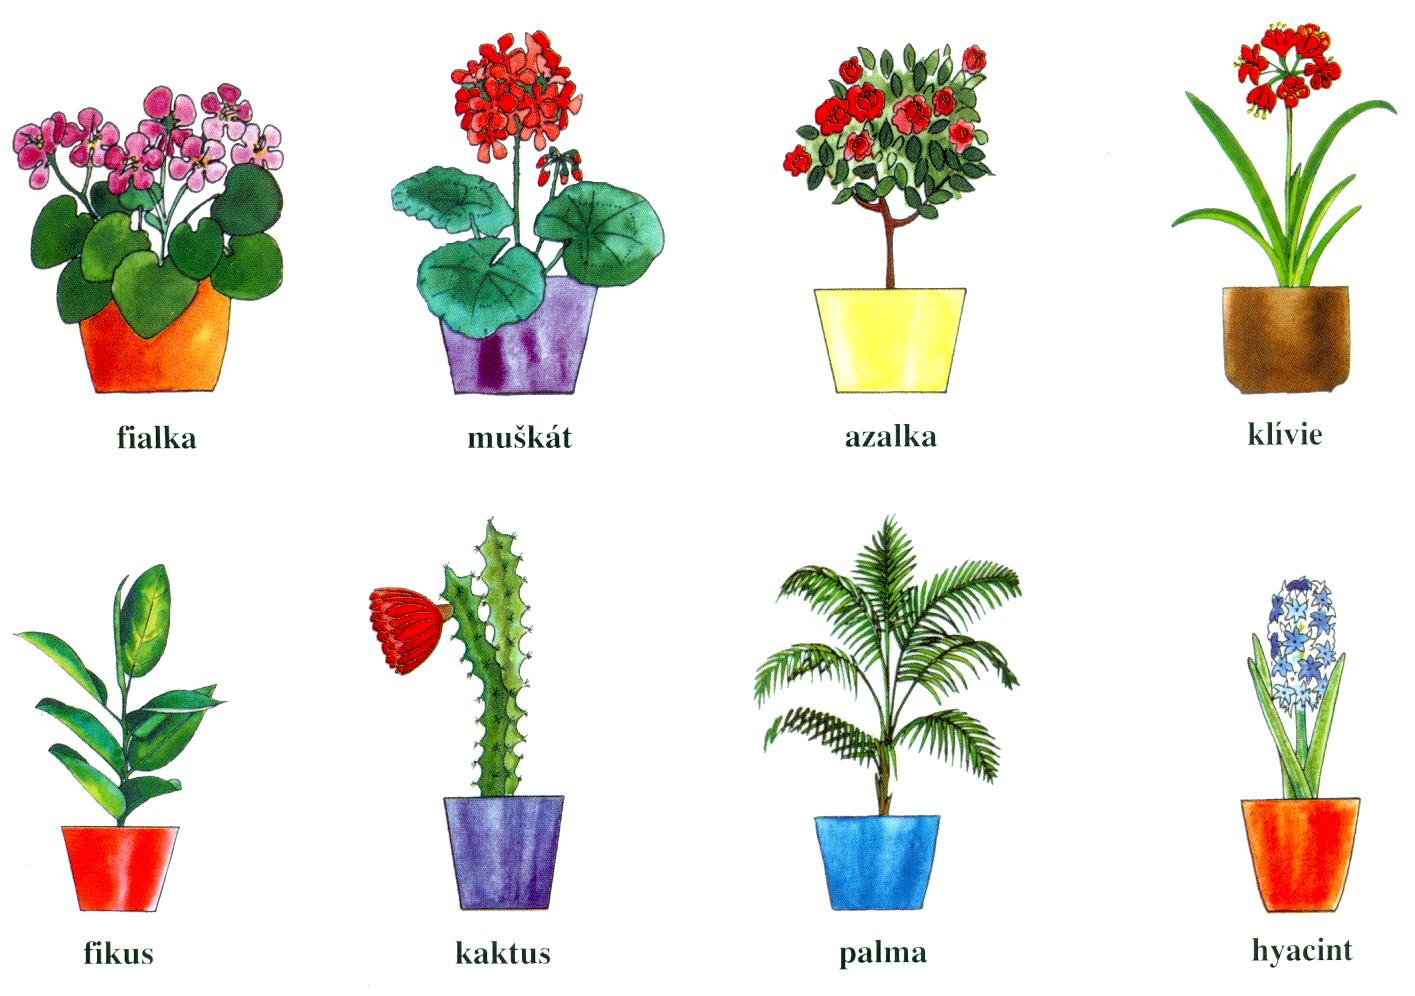 PŘÍRODOPIS Svět rostlin 2. Pokojové rostliny Pokojové rostliny pěstujeme pro radost z pěkného prostředí.